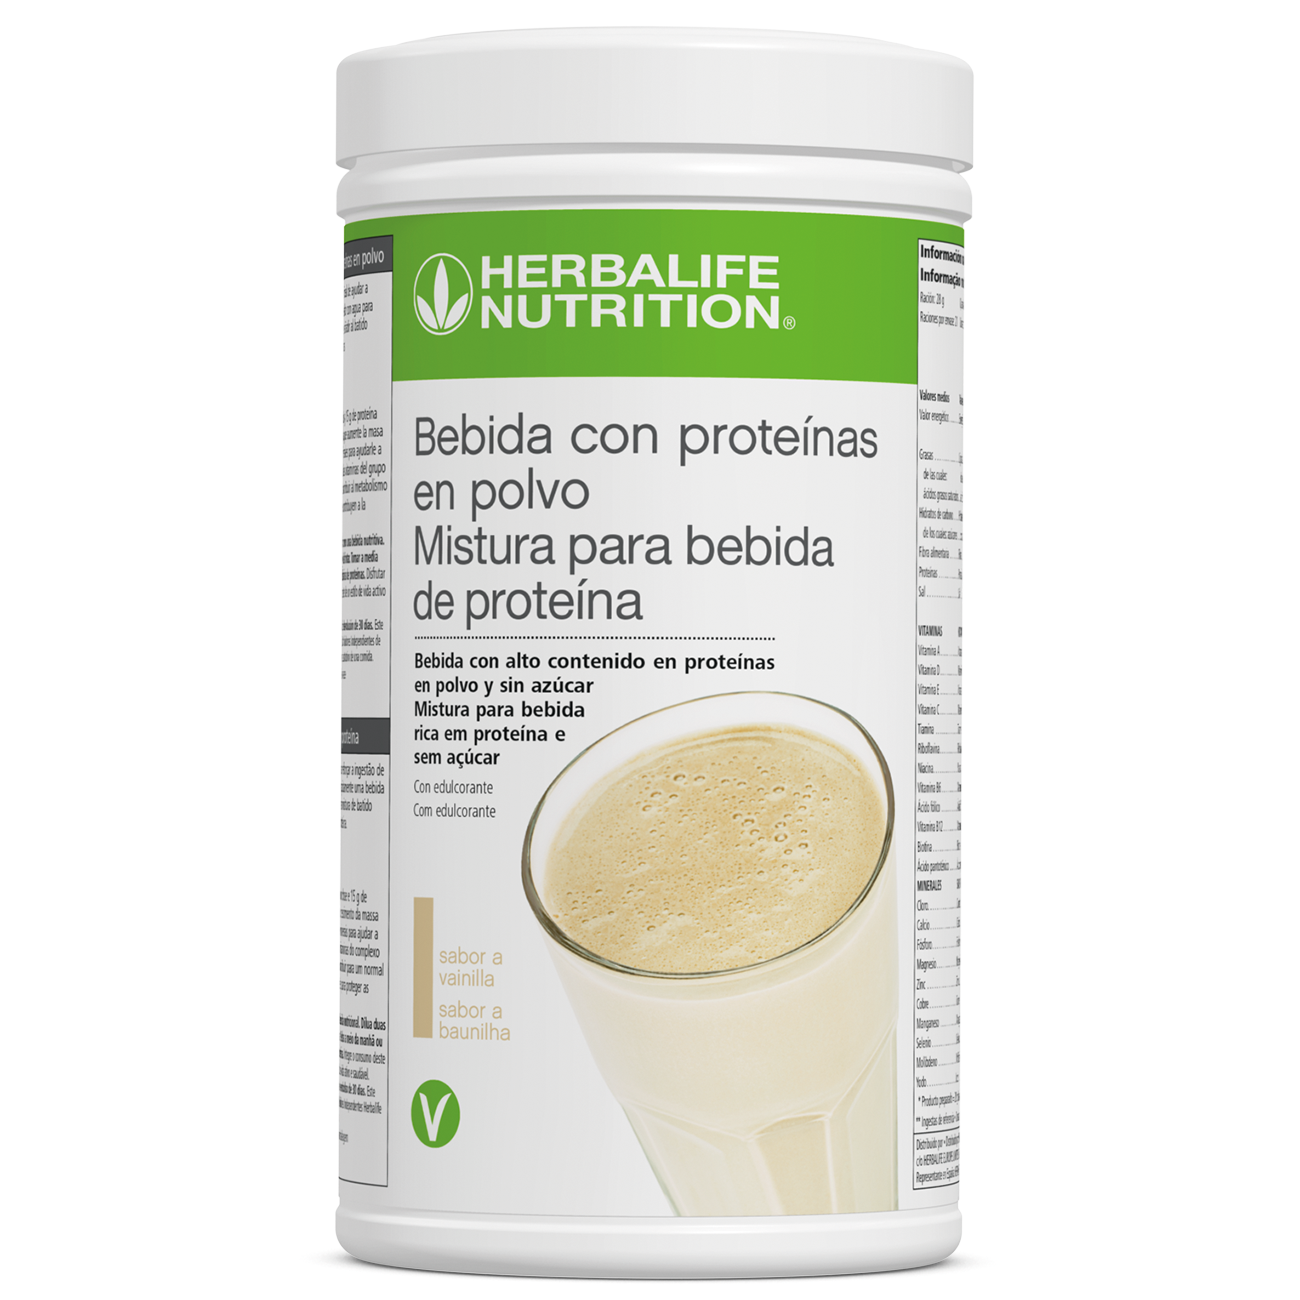 Mistura para Bebida de Proteína Reforço de Proteína Baunilha product shot